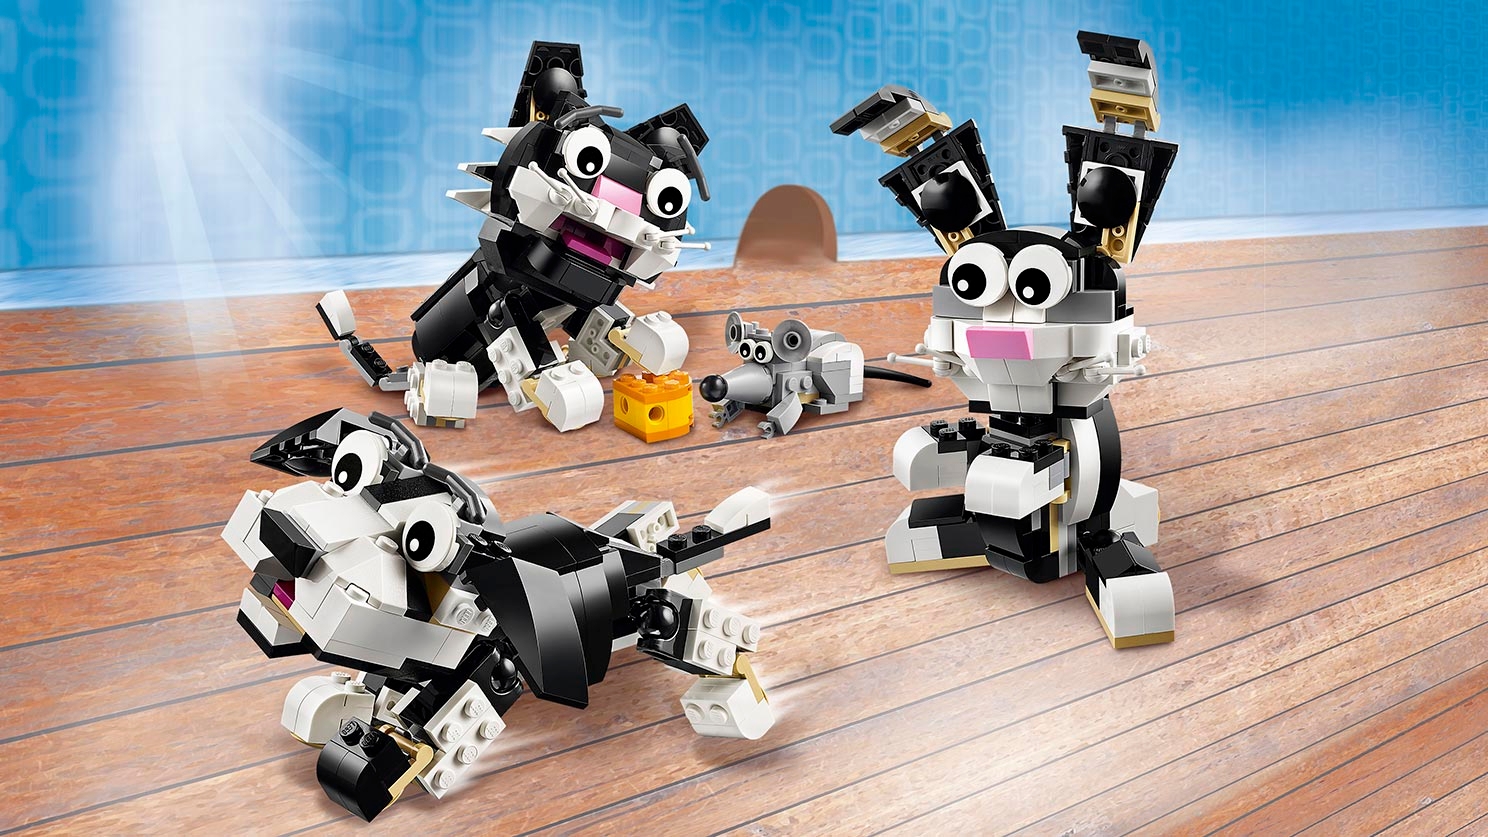 Furry Creatures 31021 - LEGO® Creator Sets - LEGO.com for kids